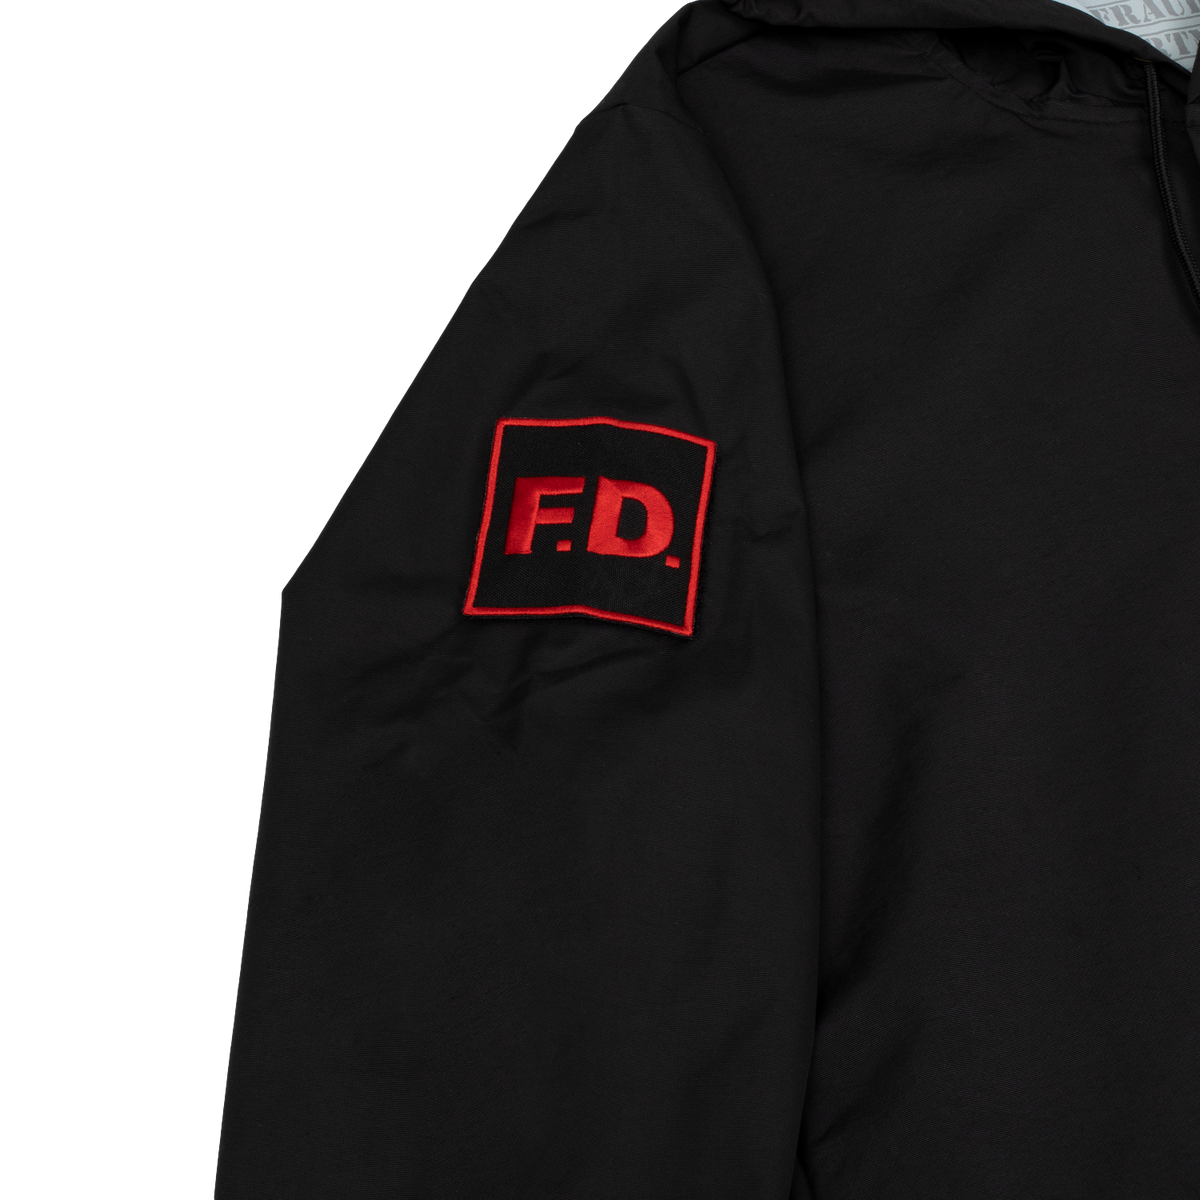 Fraud Department Work Jacket - Black